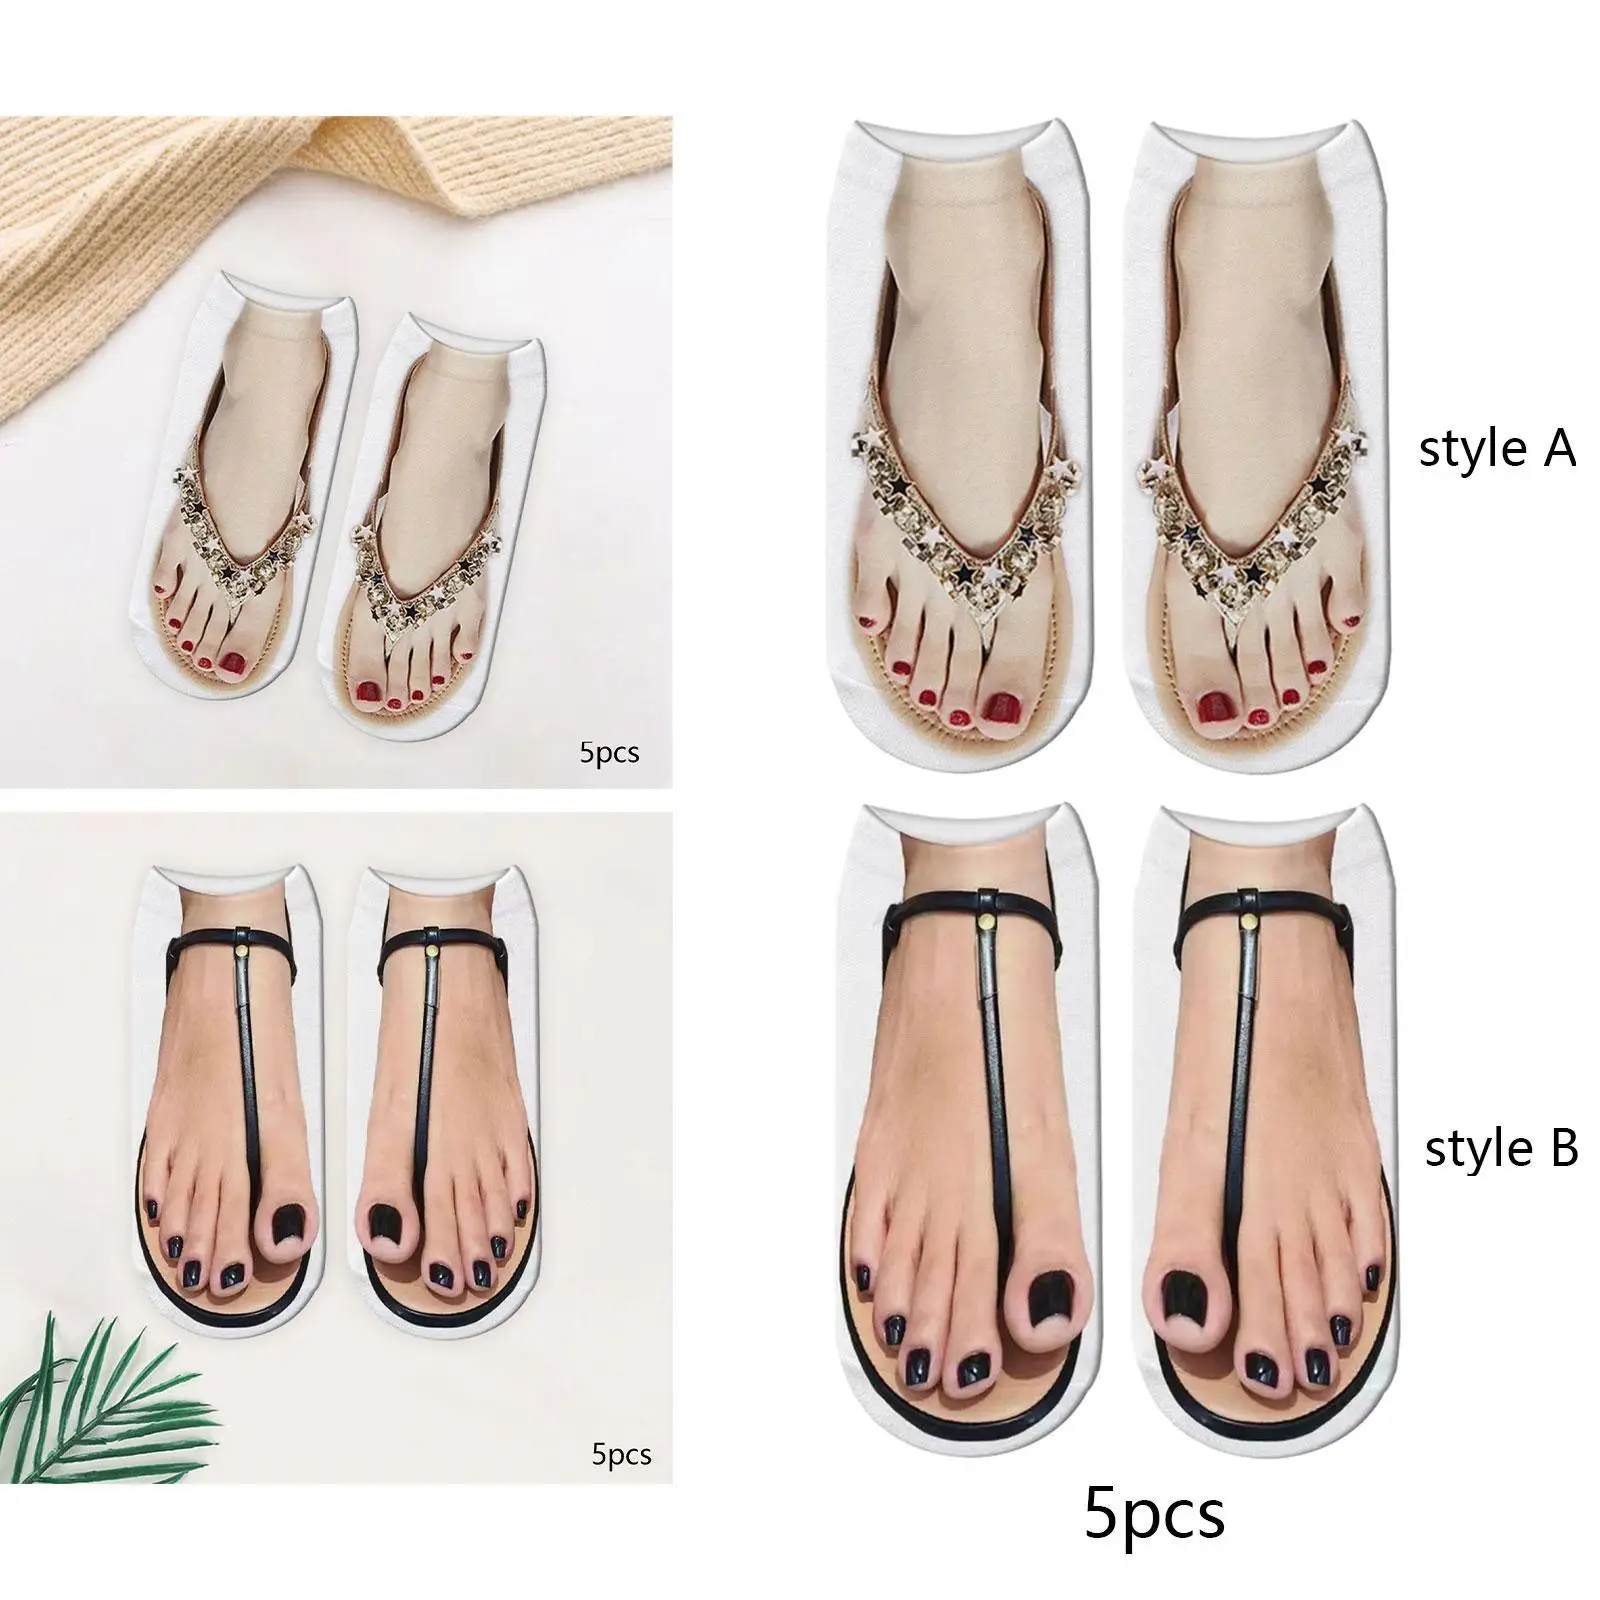 Носки с рисунком для маникюра, носки с 3D рисунком, без показа мультяшных скрытых модных забавных чулок, носки до щиколоток для занятий йогой, прогулок с девушками5